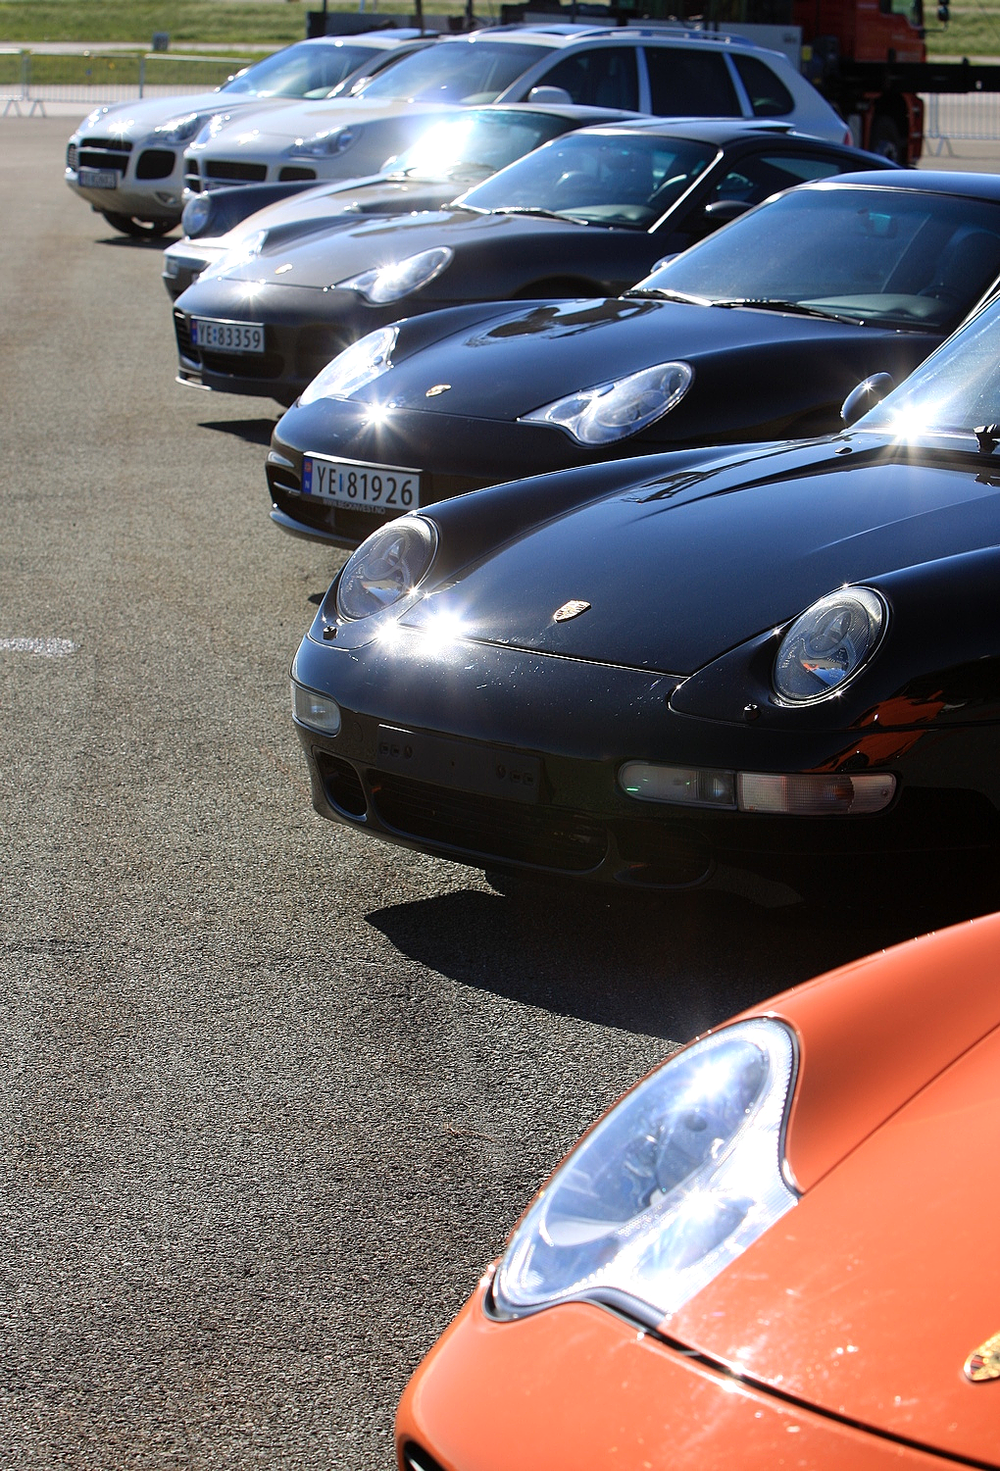 Blant alle bevingede juveler hadde også ei solid rekke Porscher fra Bodøs lokale importør sneket seg inn.